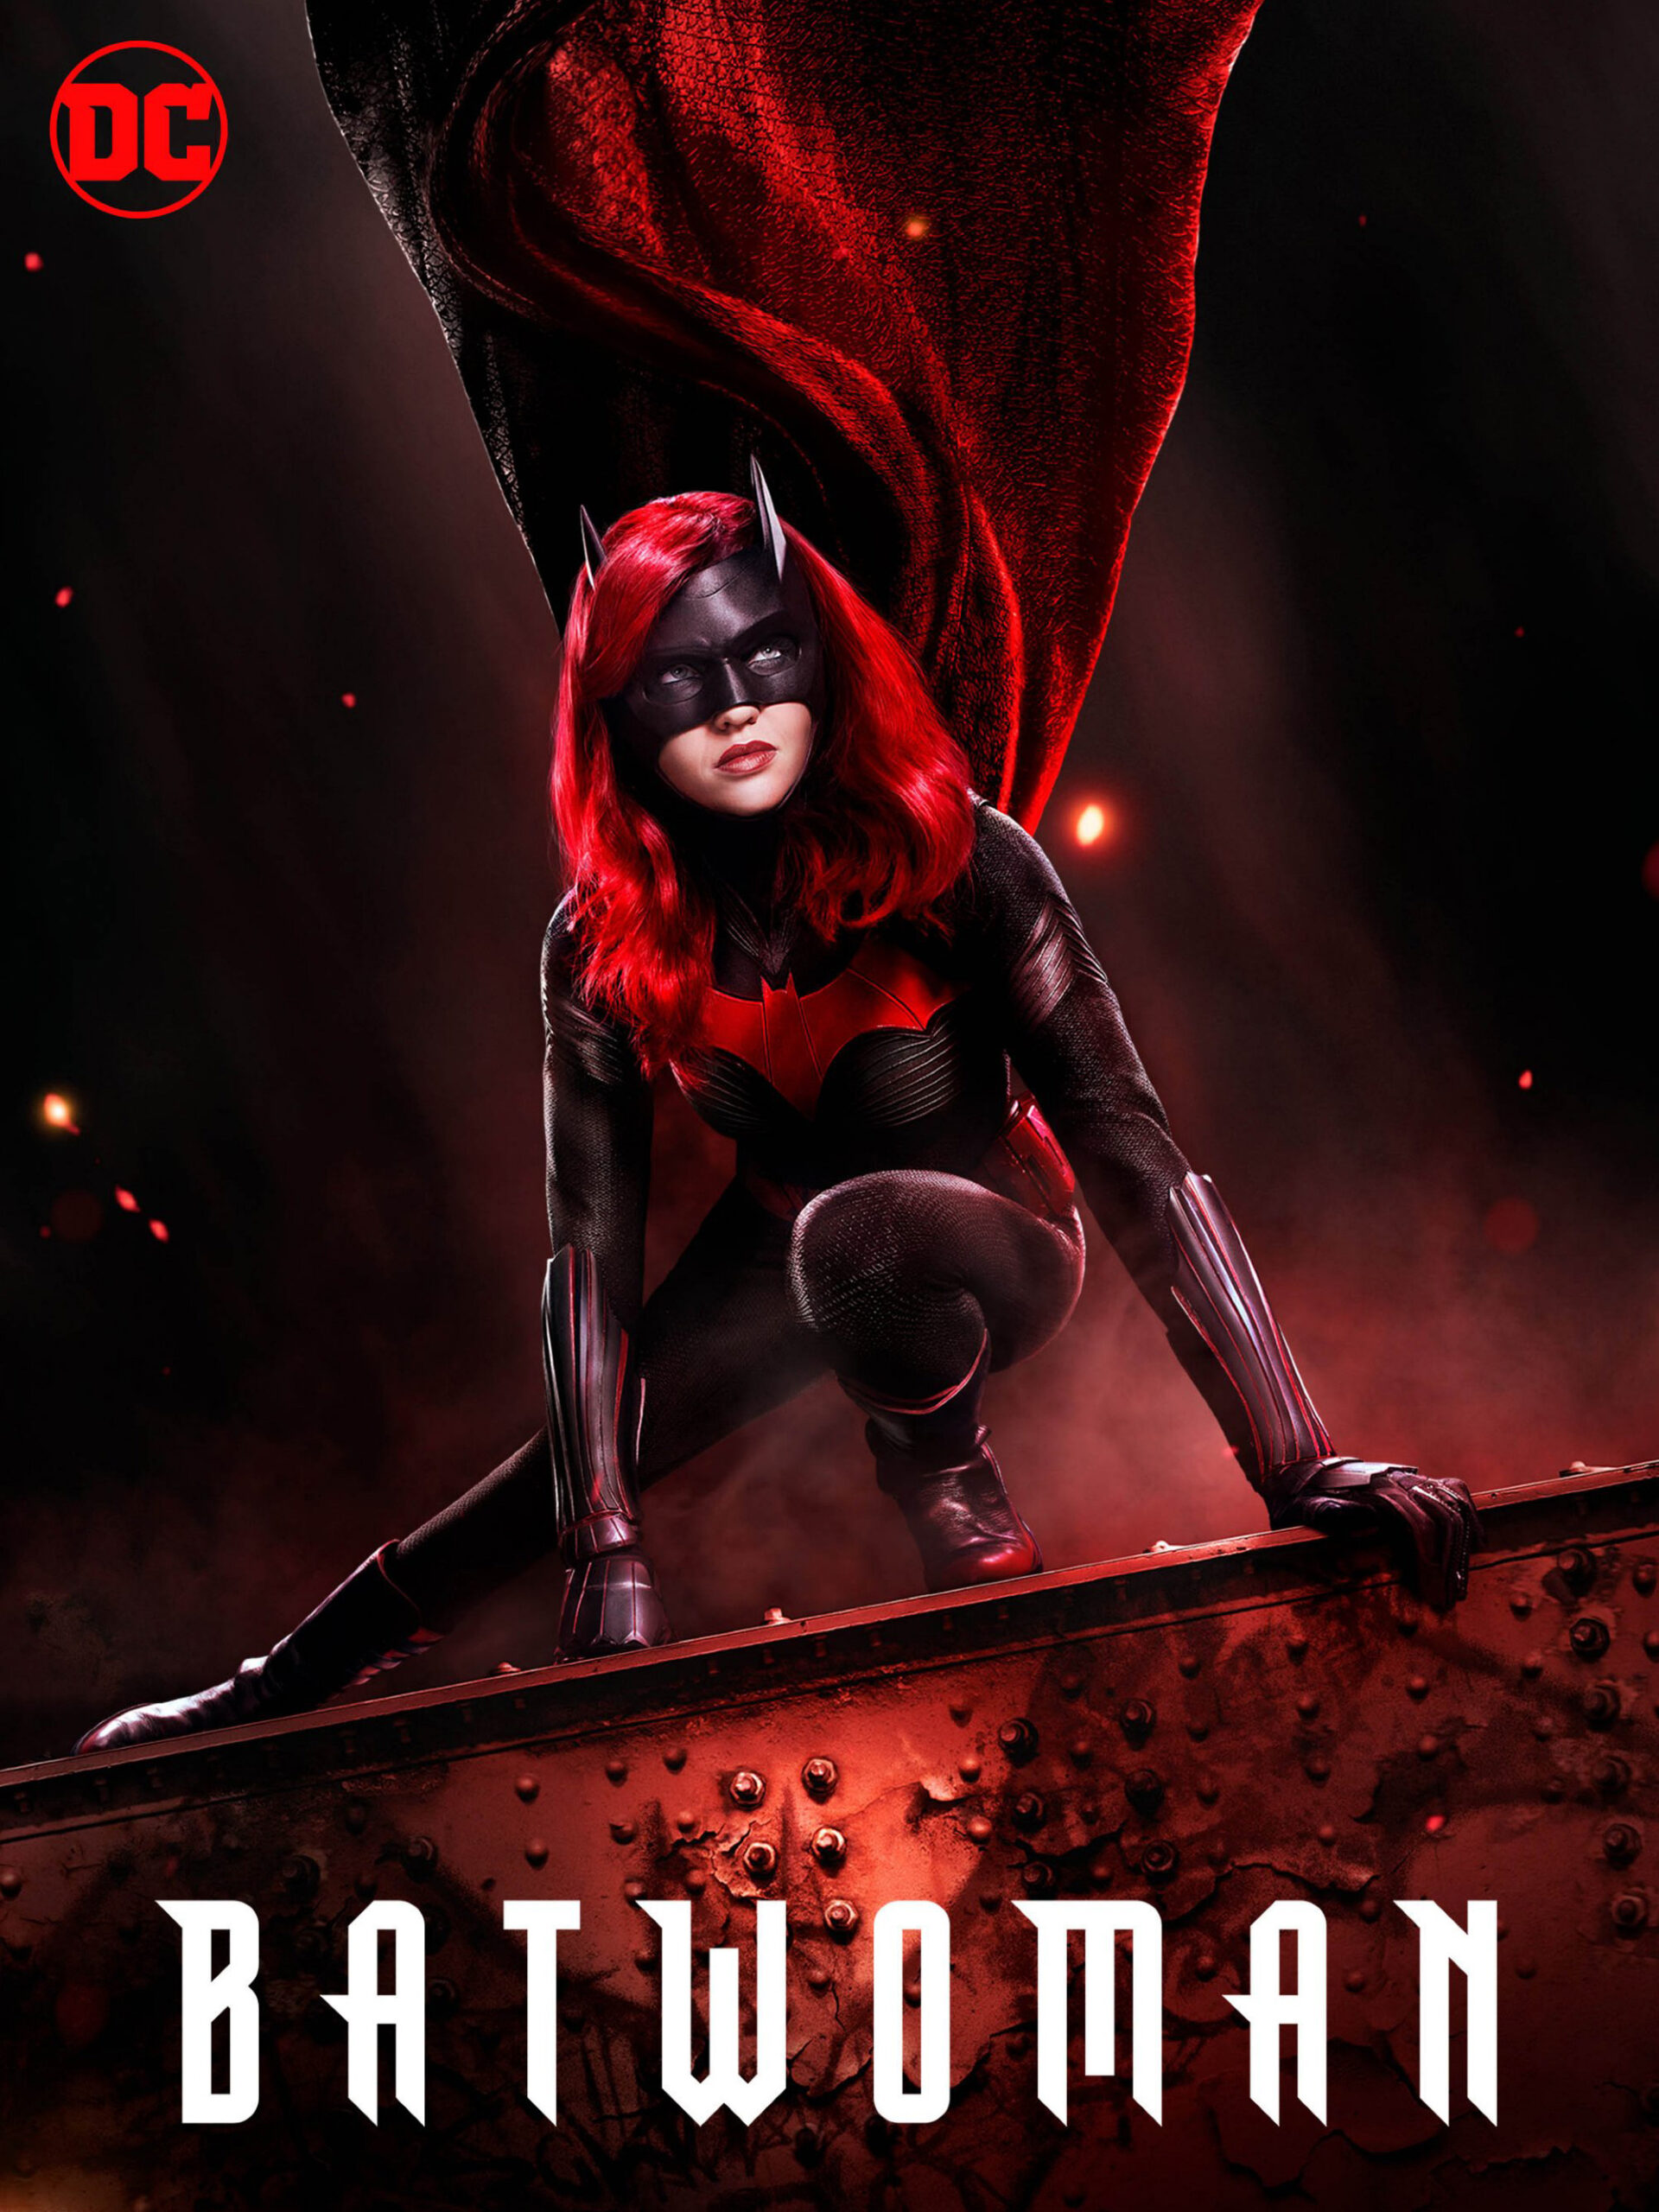 ดูหนังออนไลน์ Batwoman Season 1 (2019) EP.16 แบทวูแมน ซีซั่น 1 ตอนที่ 20 (Soundtrack)